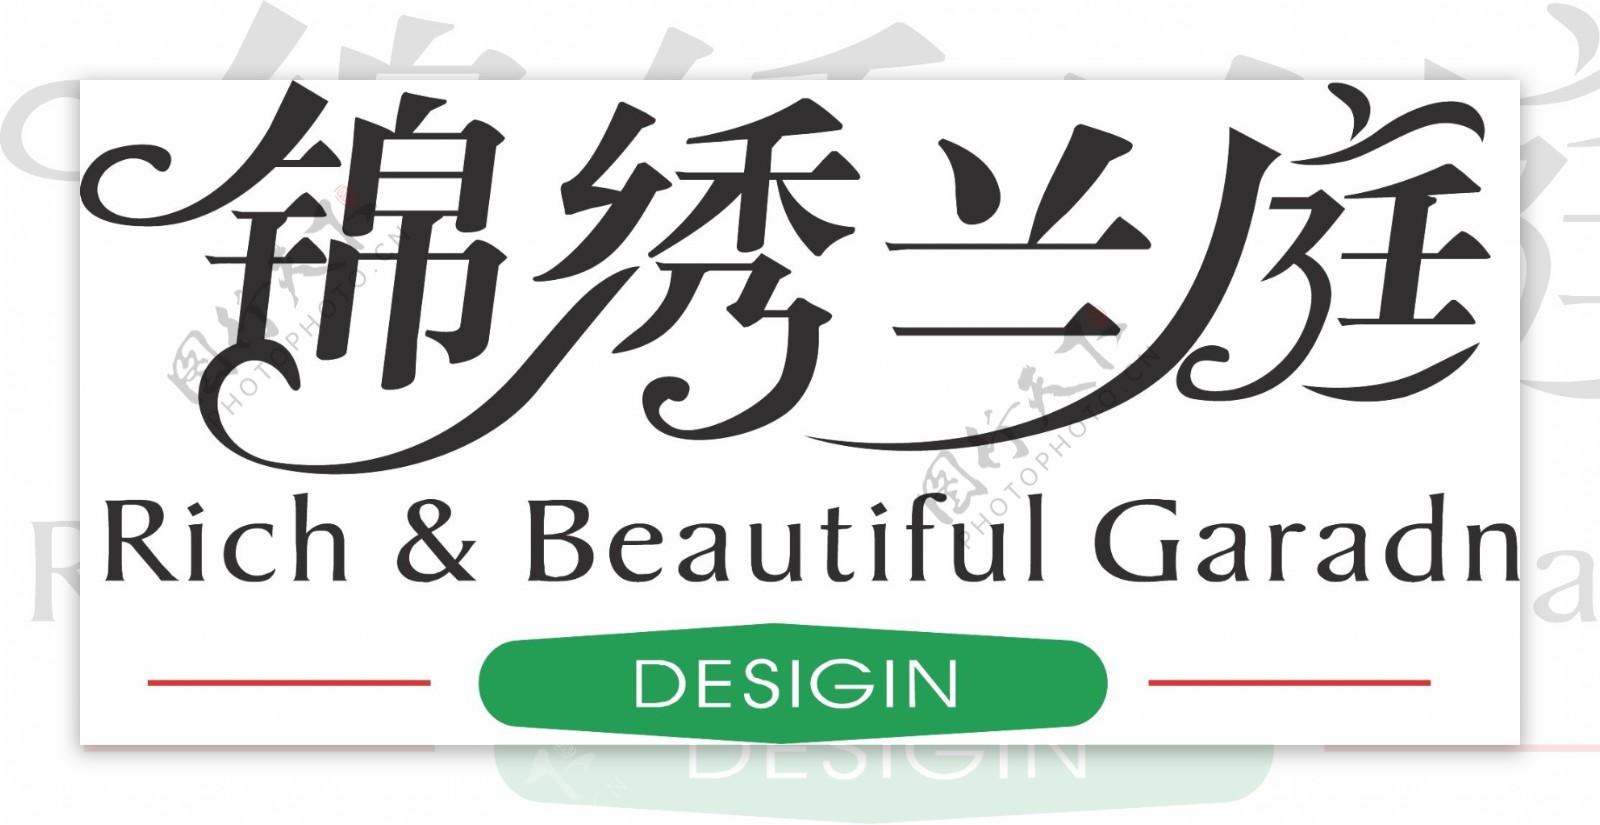 锦绣兰庭字体设计